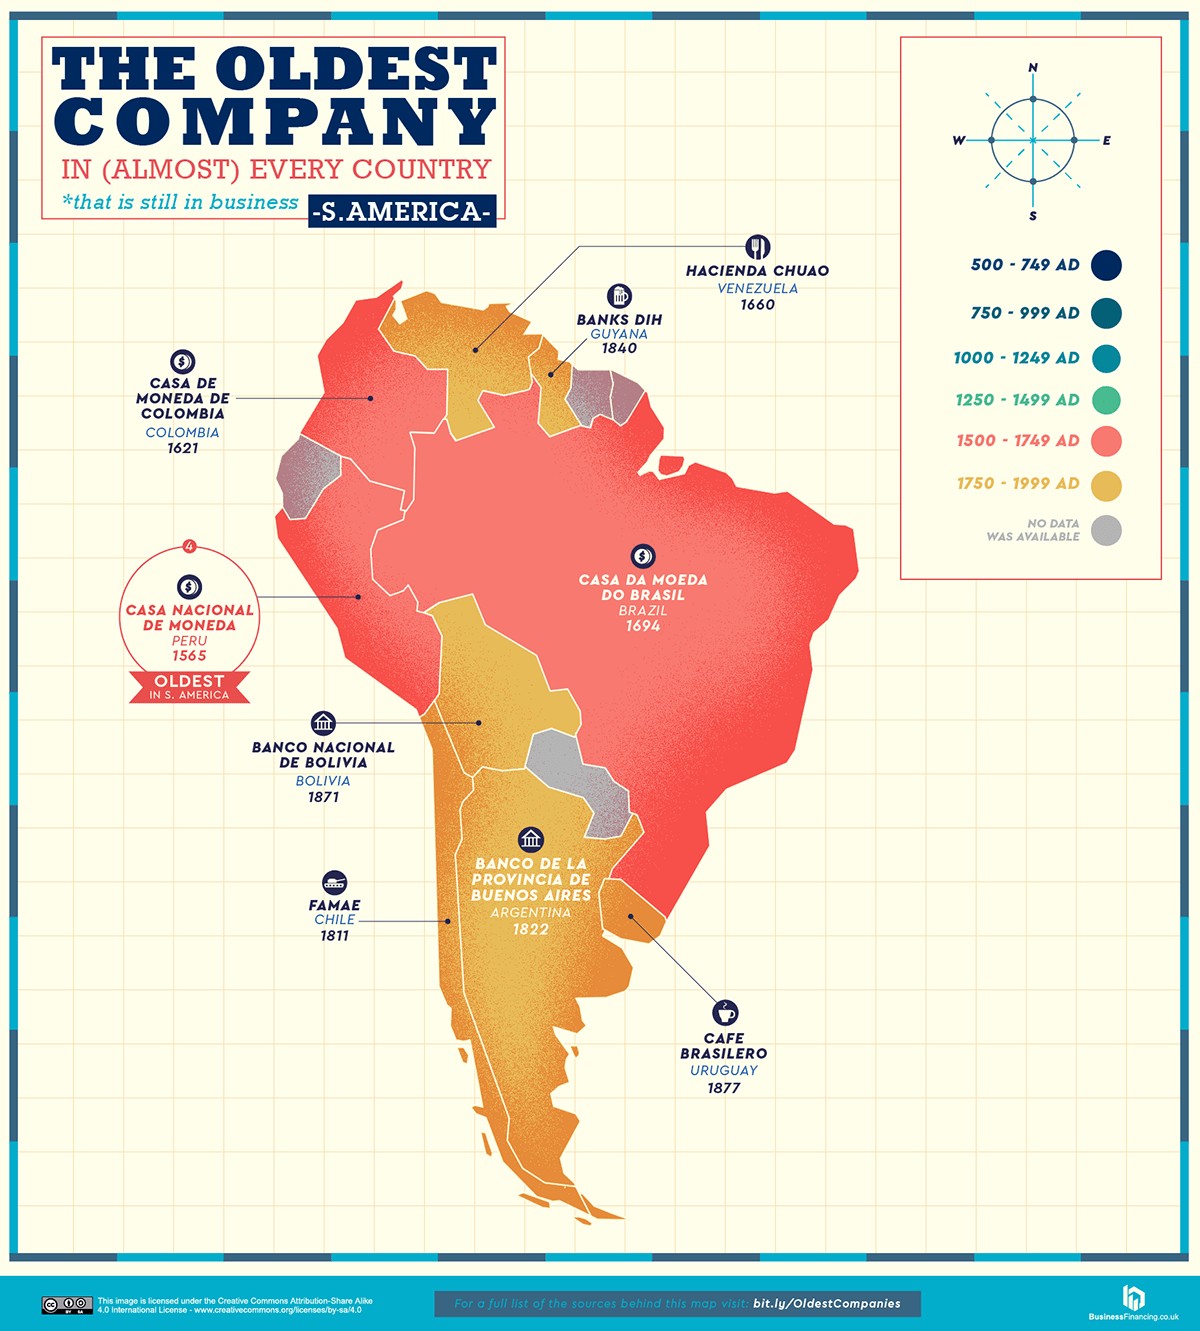 Mapa com as empresas mais antigas em atividade da América do Sul (Foto: Reprodução/Business Insider)